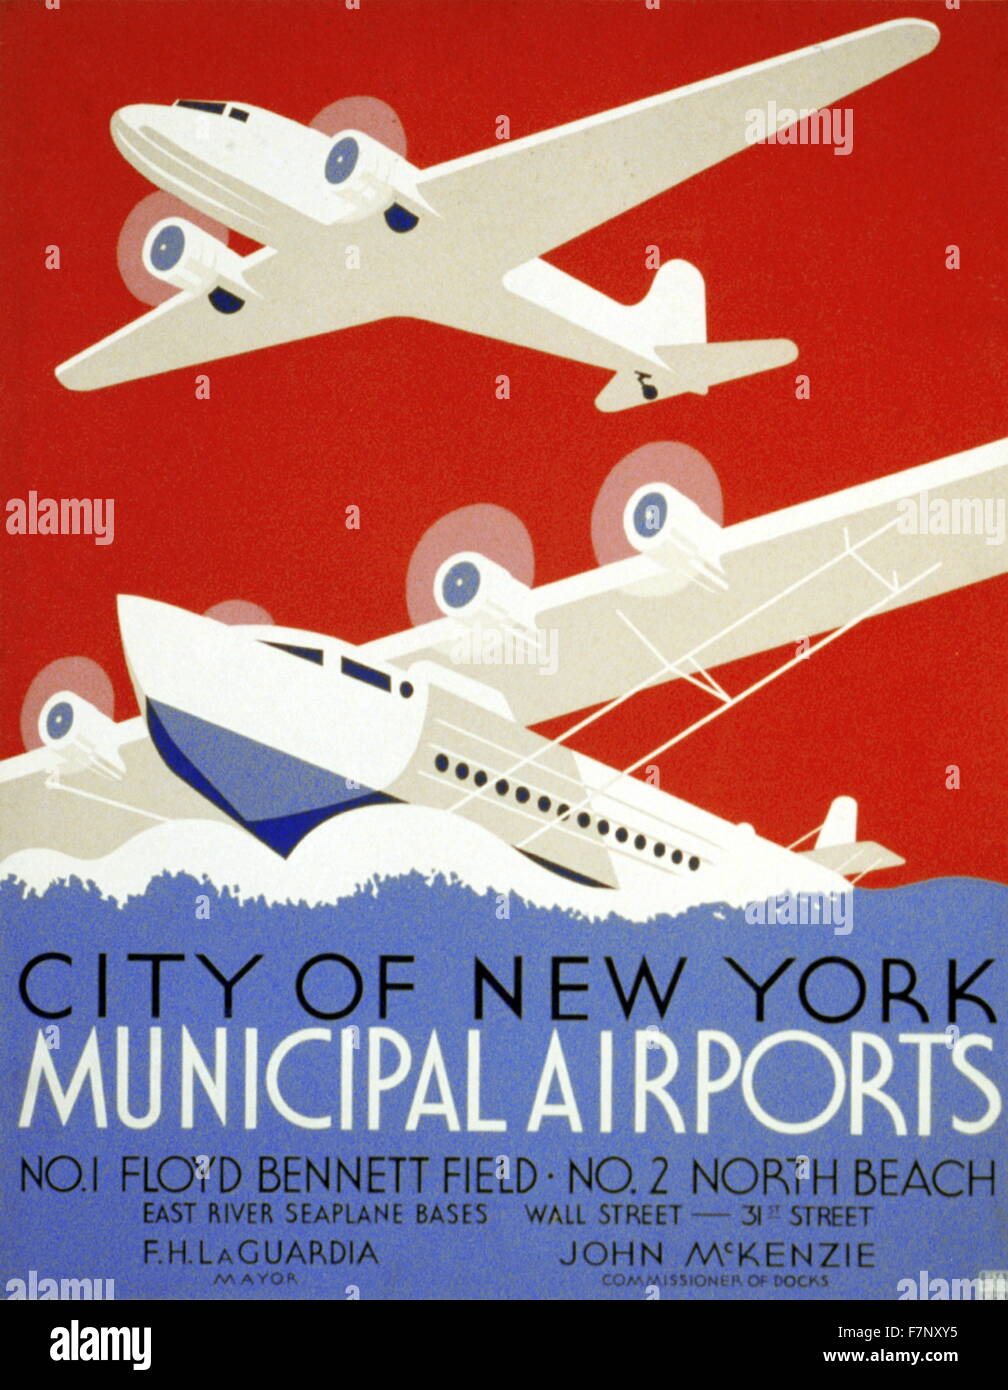 La promotion de l'affiche du New York aéroports municipaux 1937 Banque D'Images